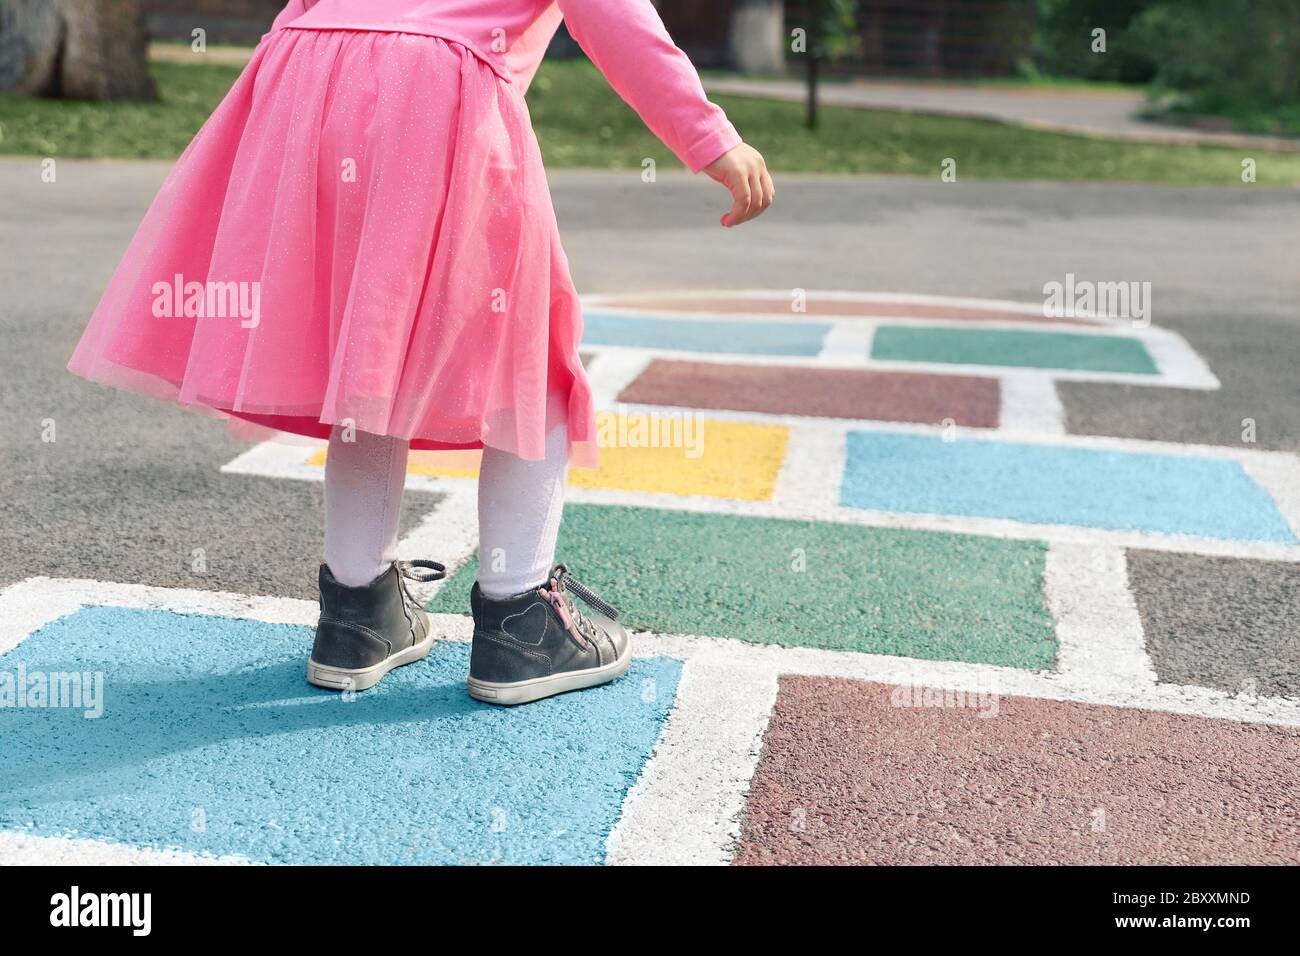 Kleines Mädchen in einem rosa Kleid spielen hopscotch auf Spielplatz im Freien, Kinder Aktivitäten im Freien Stockfoto